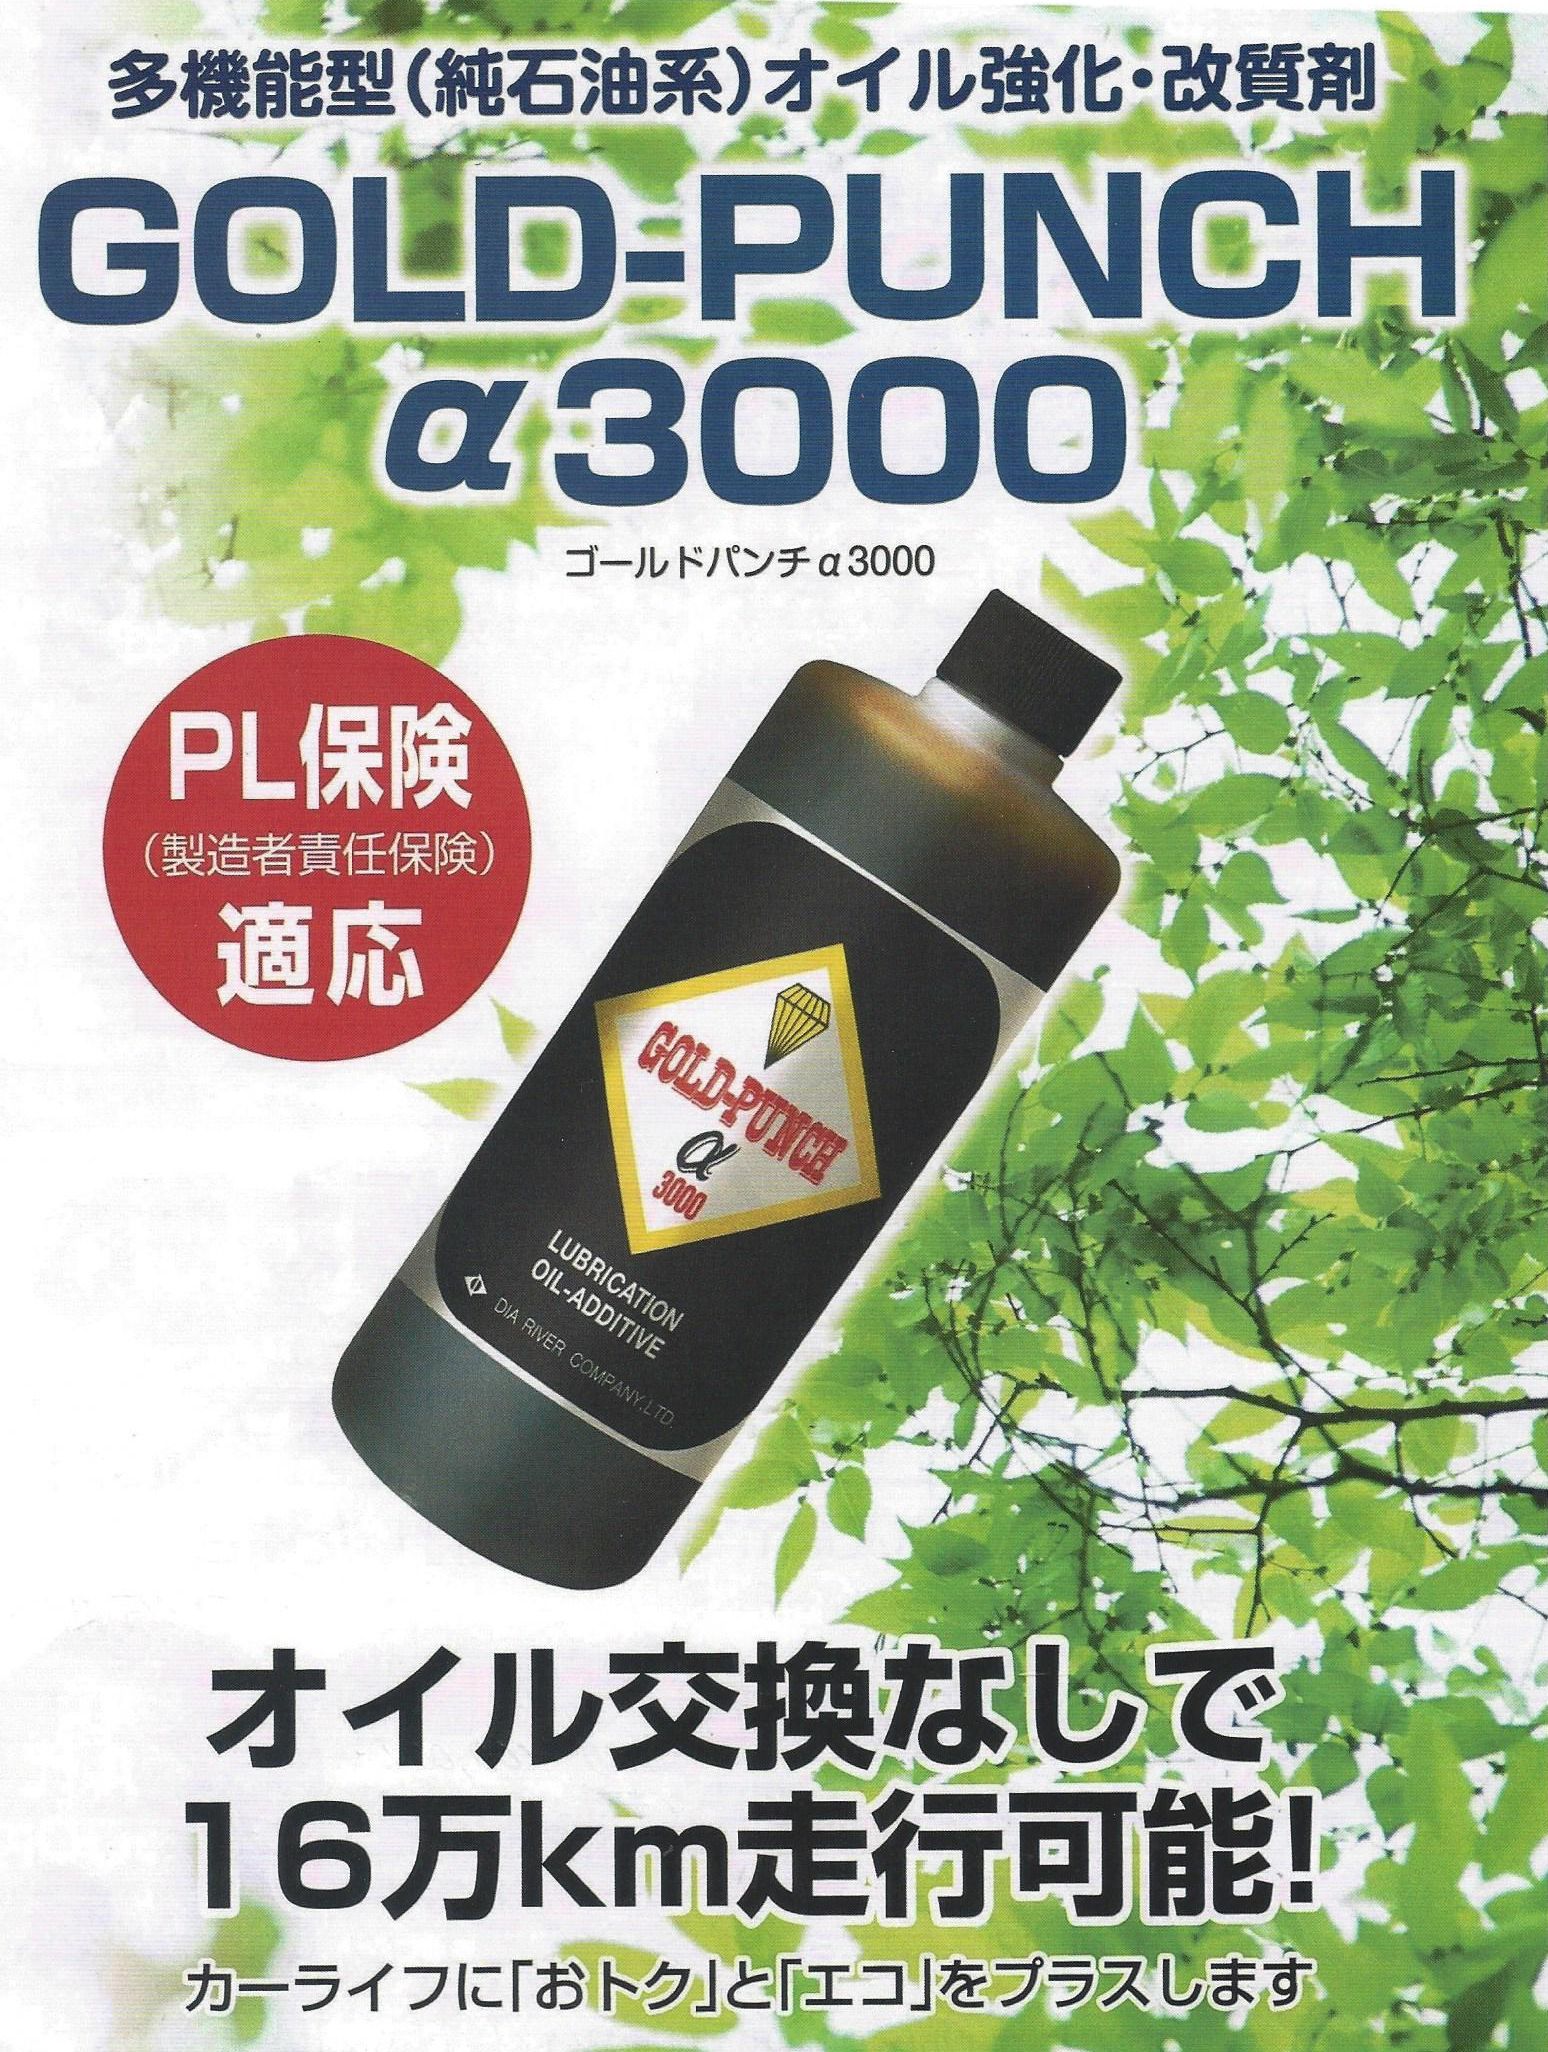 ゴールドパンチα3000 性能データ | gold-punch α3000